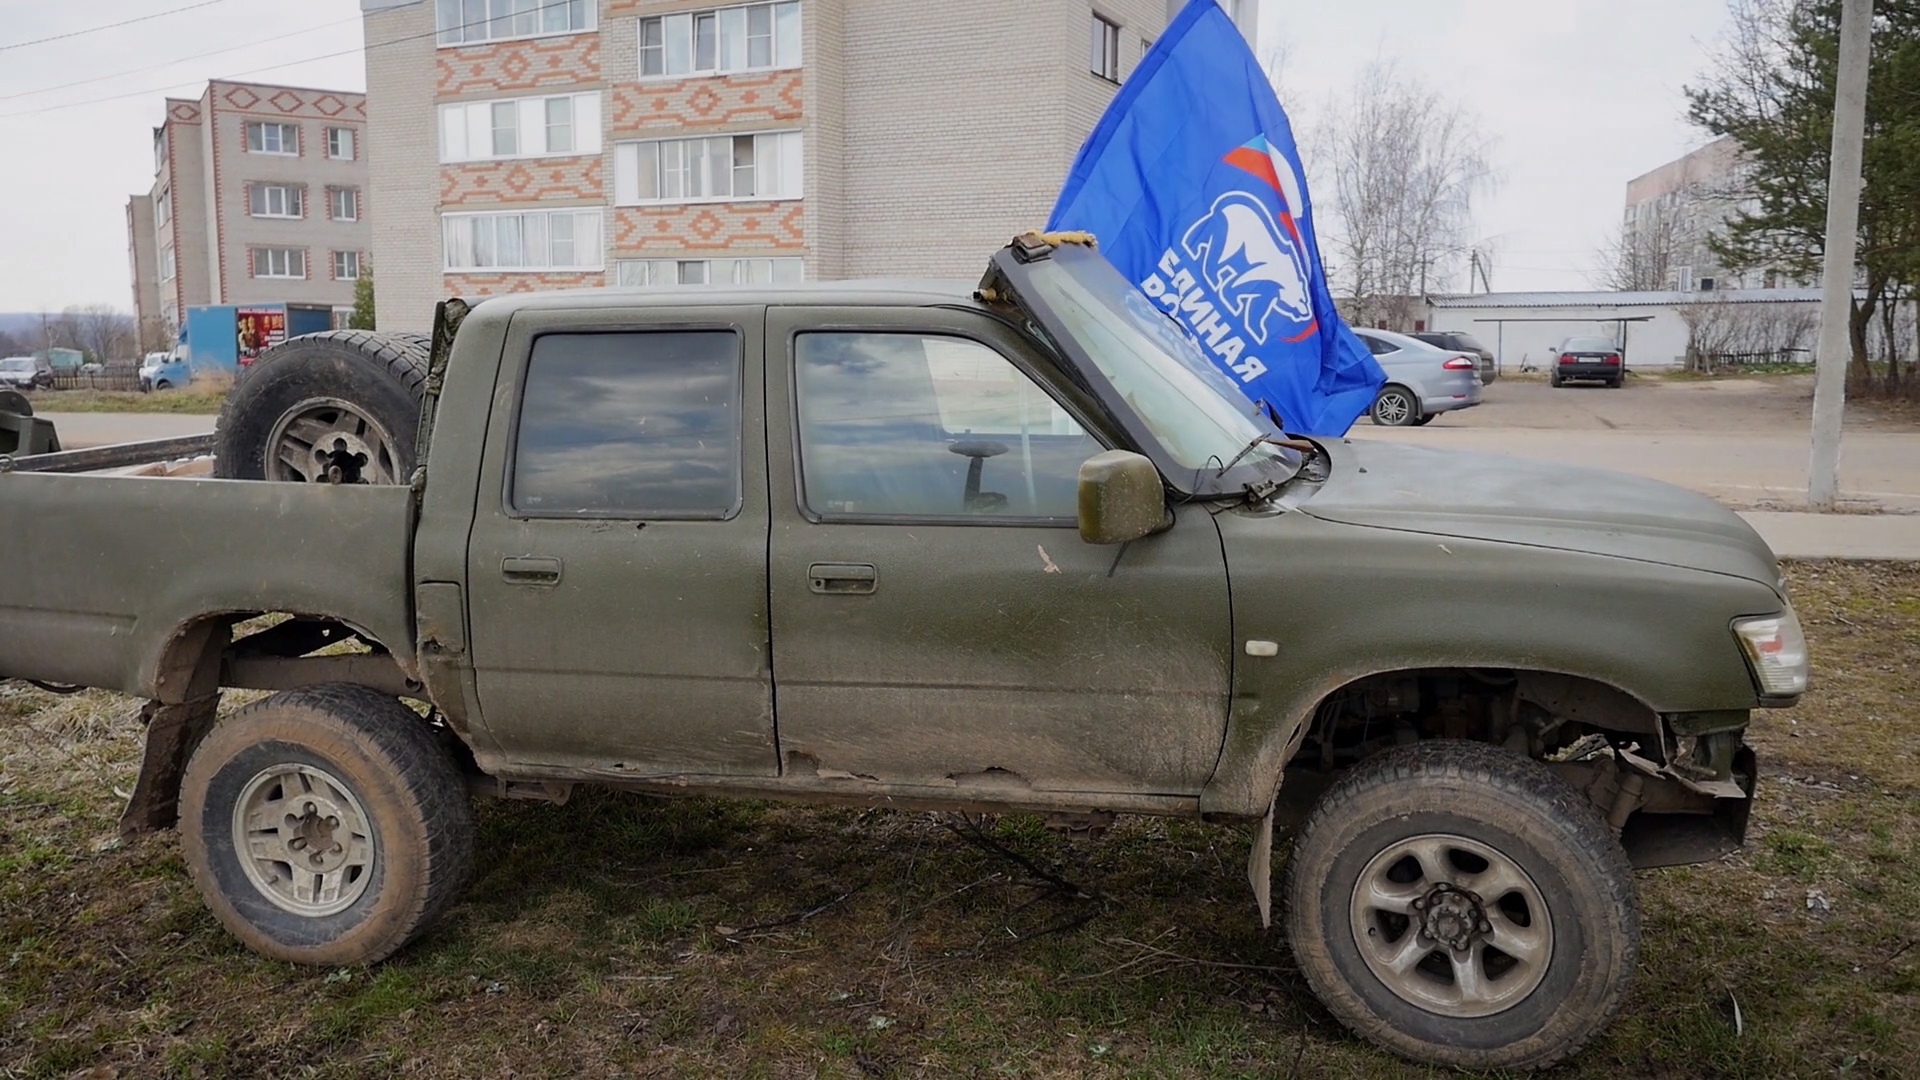 Жители поселка Ярославской области отправили участникам СВО бронеавтомобиль